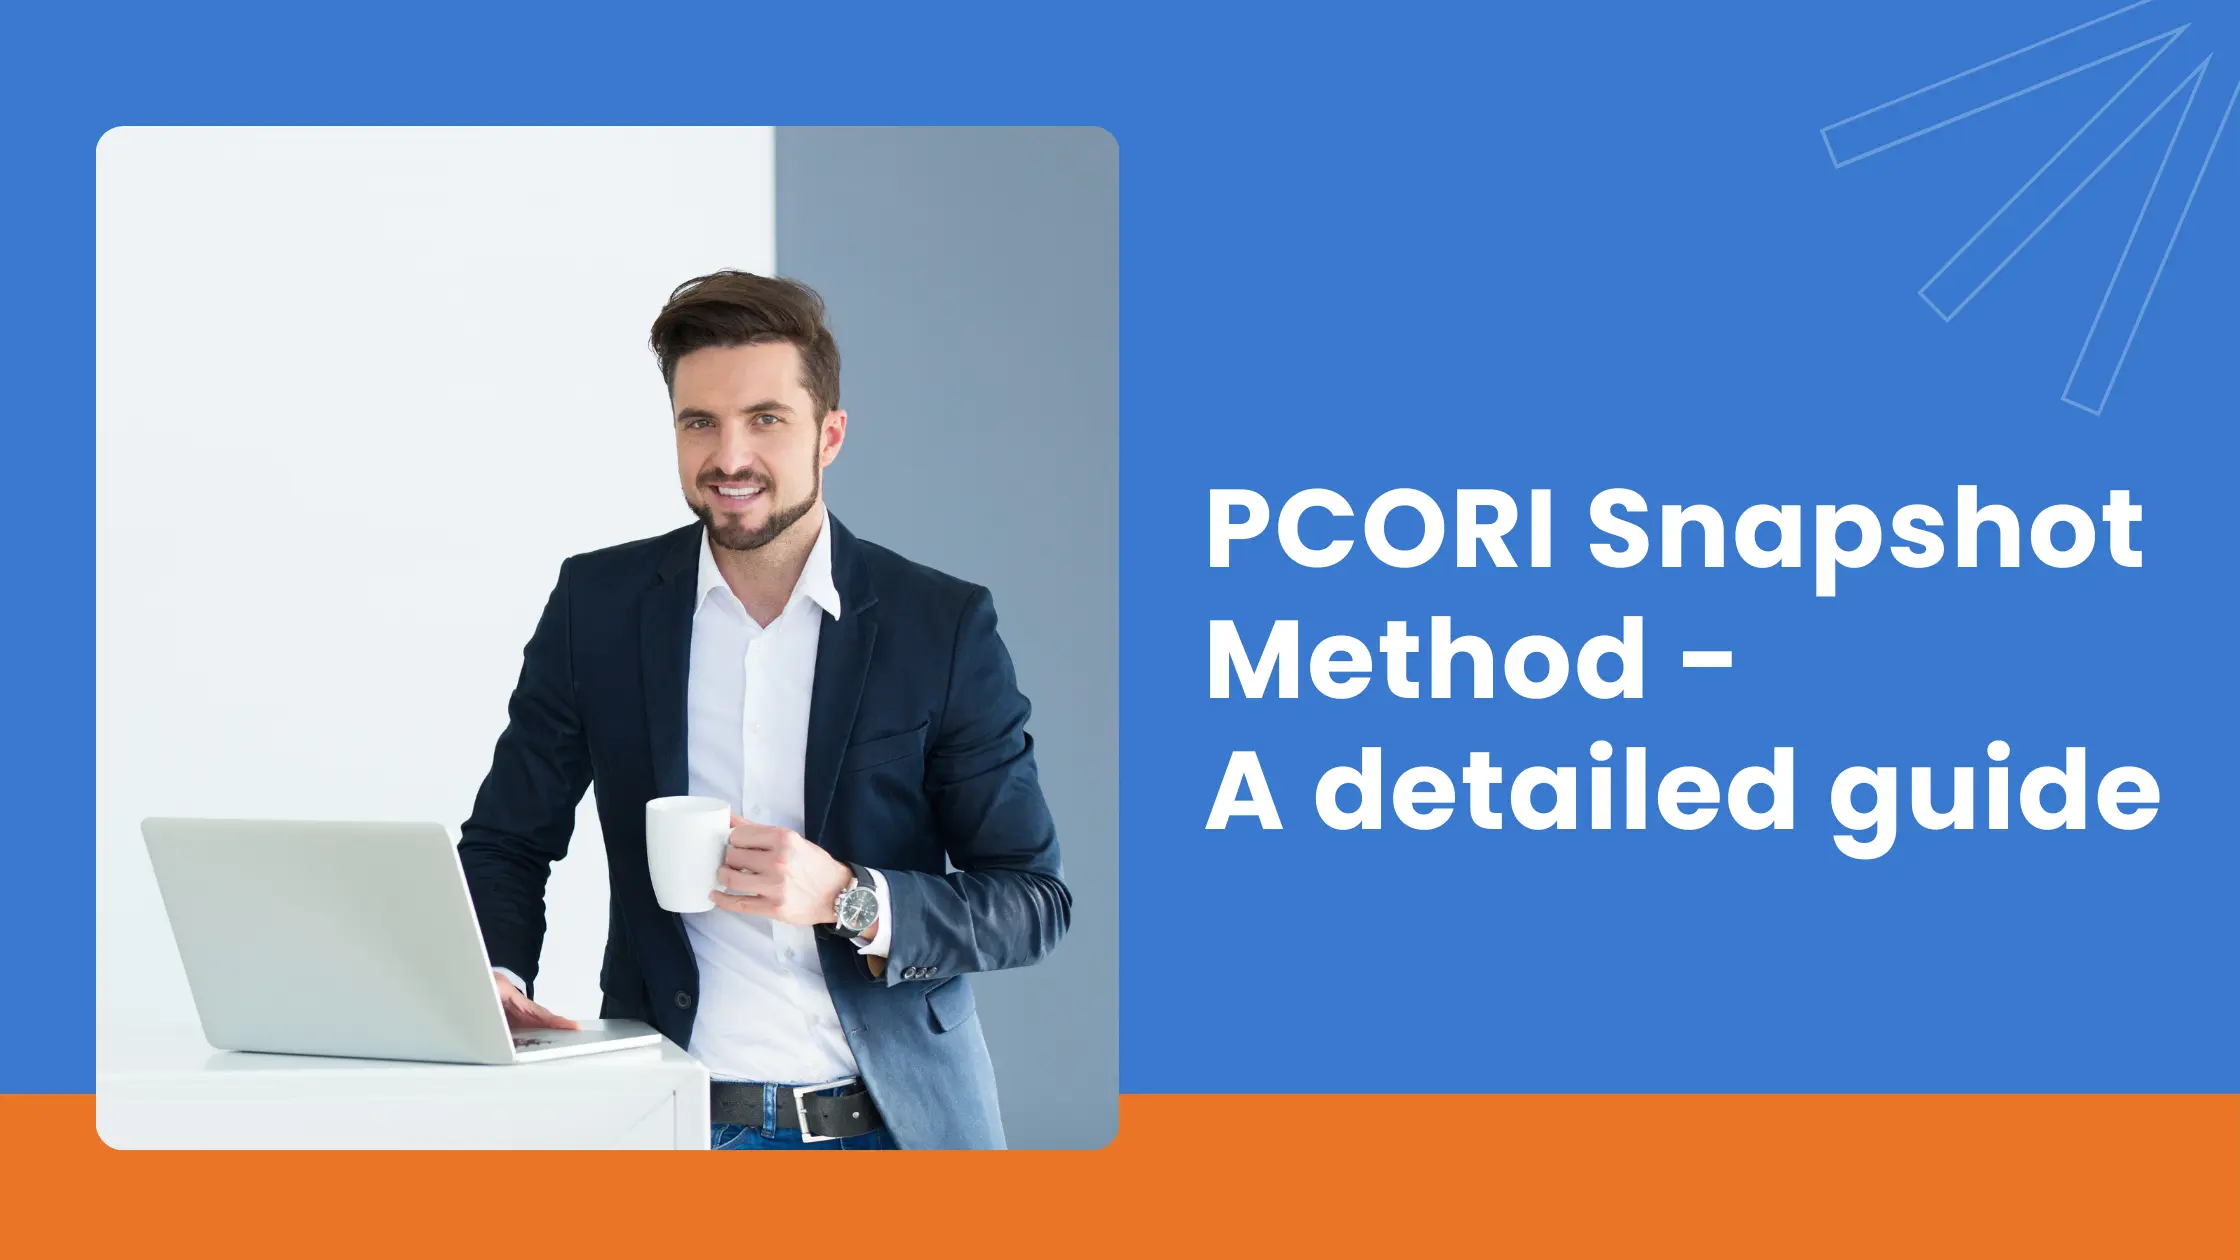 PCORI Snapshot Method - A detailed guide